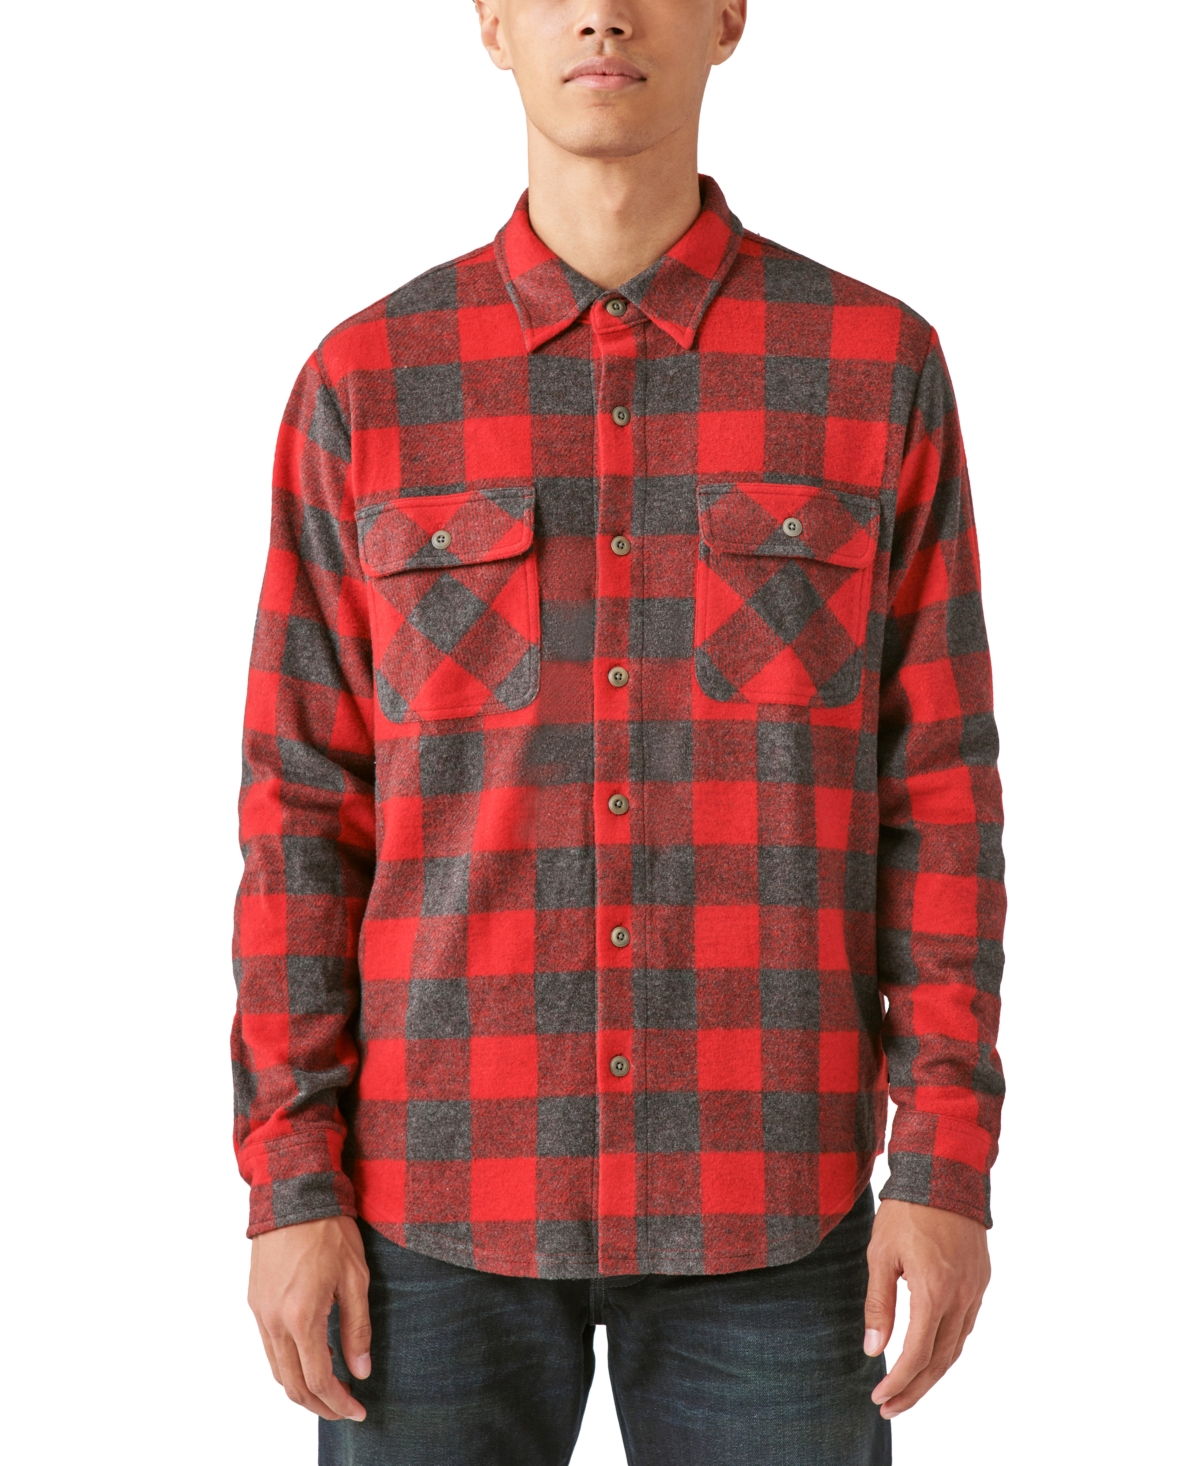 Nemlig Bestået Børnehave Lucky Brand Buffalo Plaid Shirt In Red Multi | ModeSens